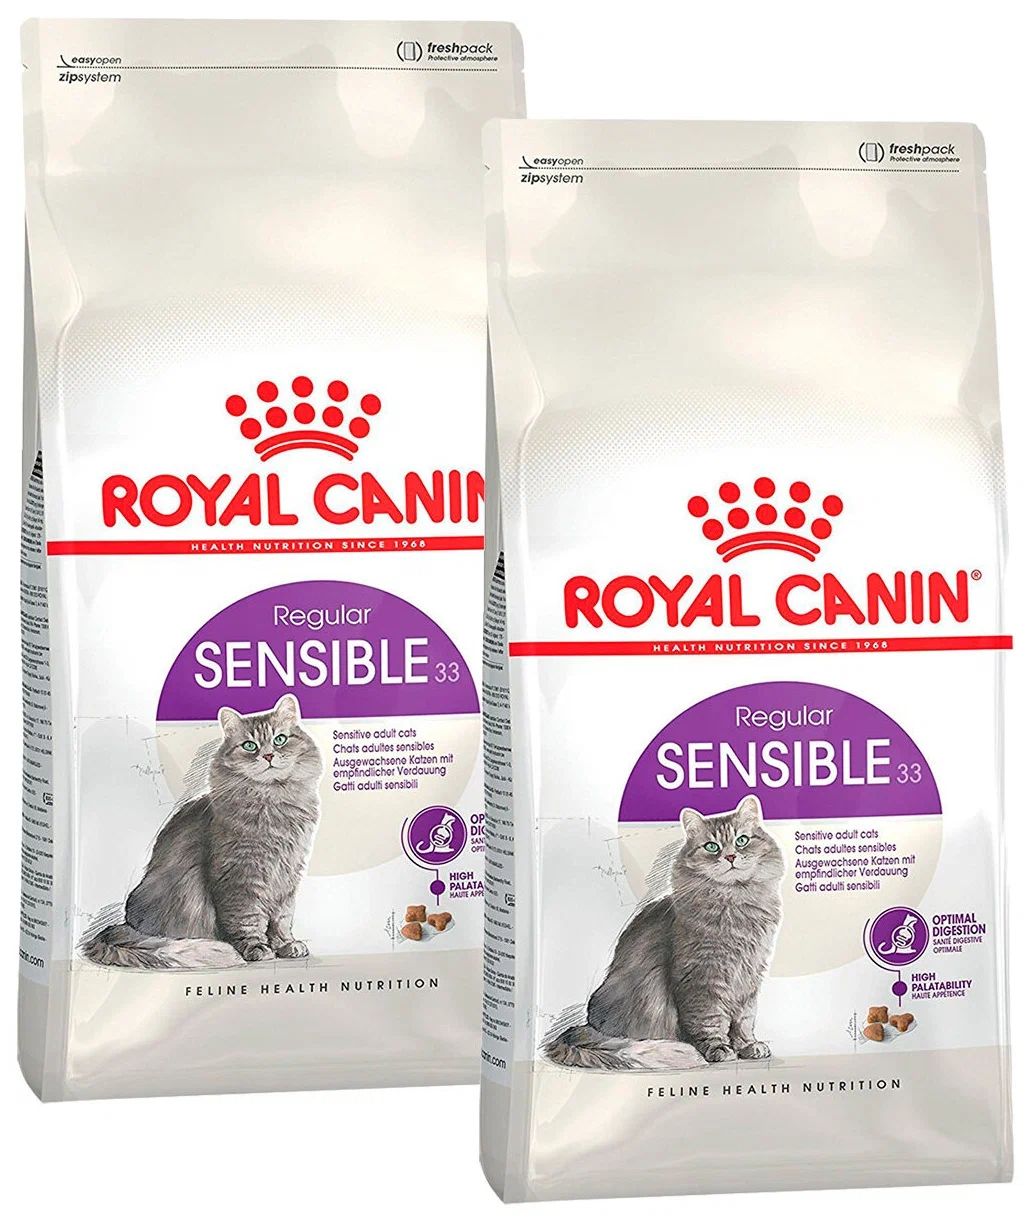 Роял в для кошек купить спб. Роял Канин Сенсибл 33. Sensible корм для кошек Royal Canin. Royal Canin sensible для кошек. Royal Canin sensible 33 (2 кг).